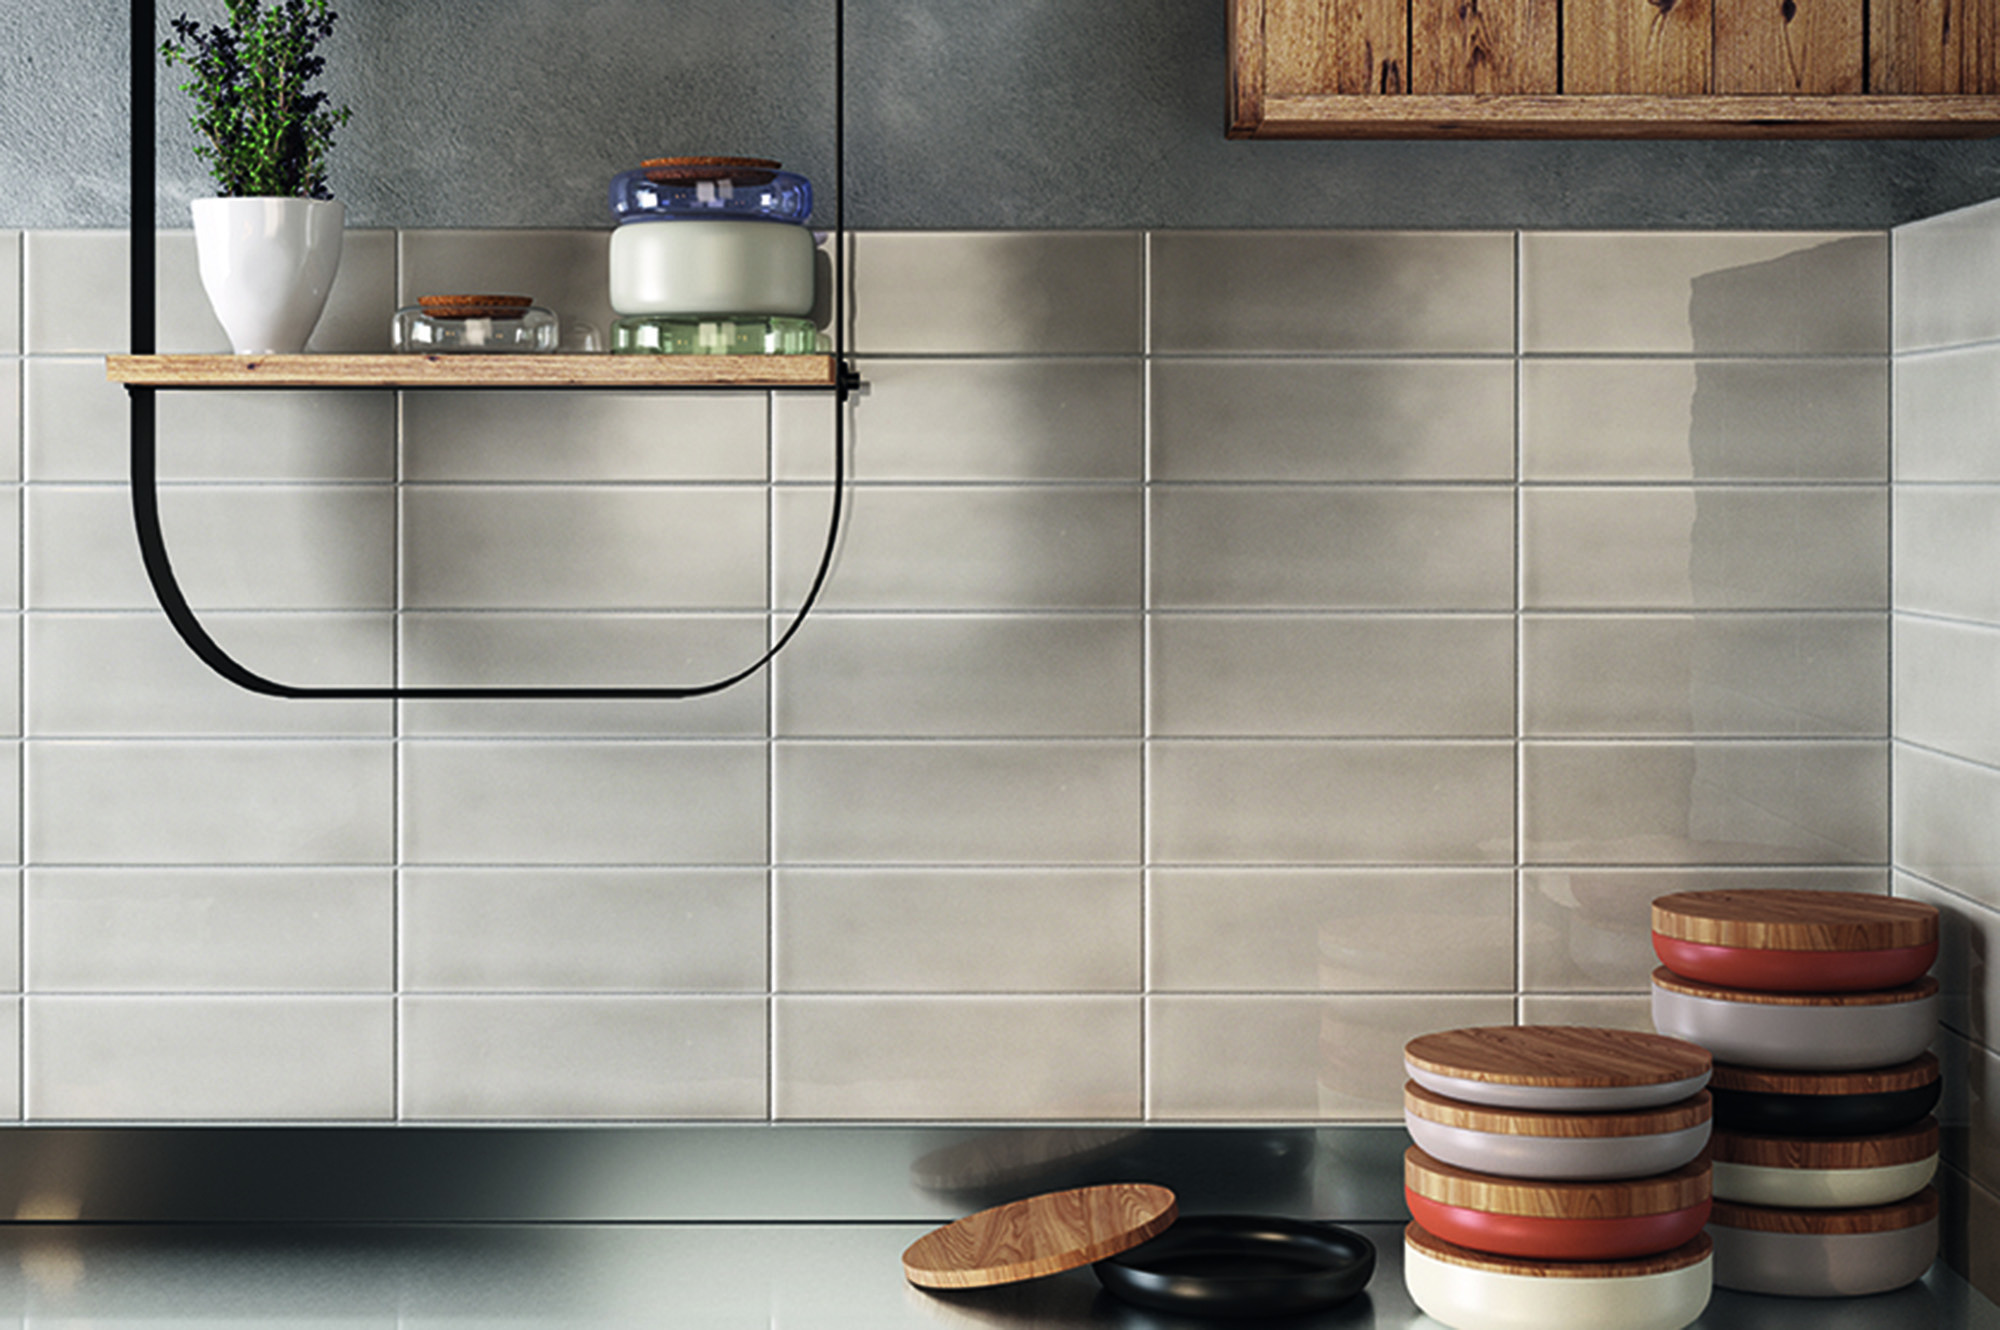 Tiled Kitchen Backsplash
 75 Kitchen Backsplash Ideas for 2020 Tile Glass Metal etc